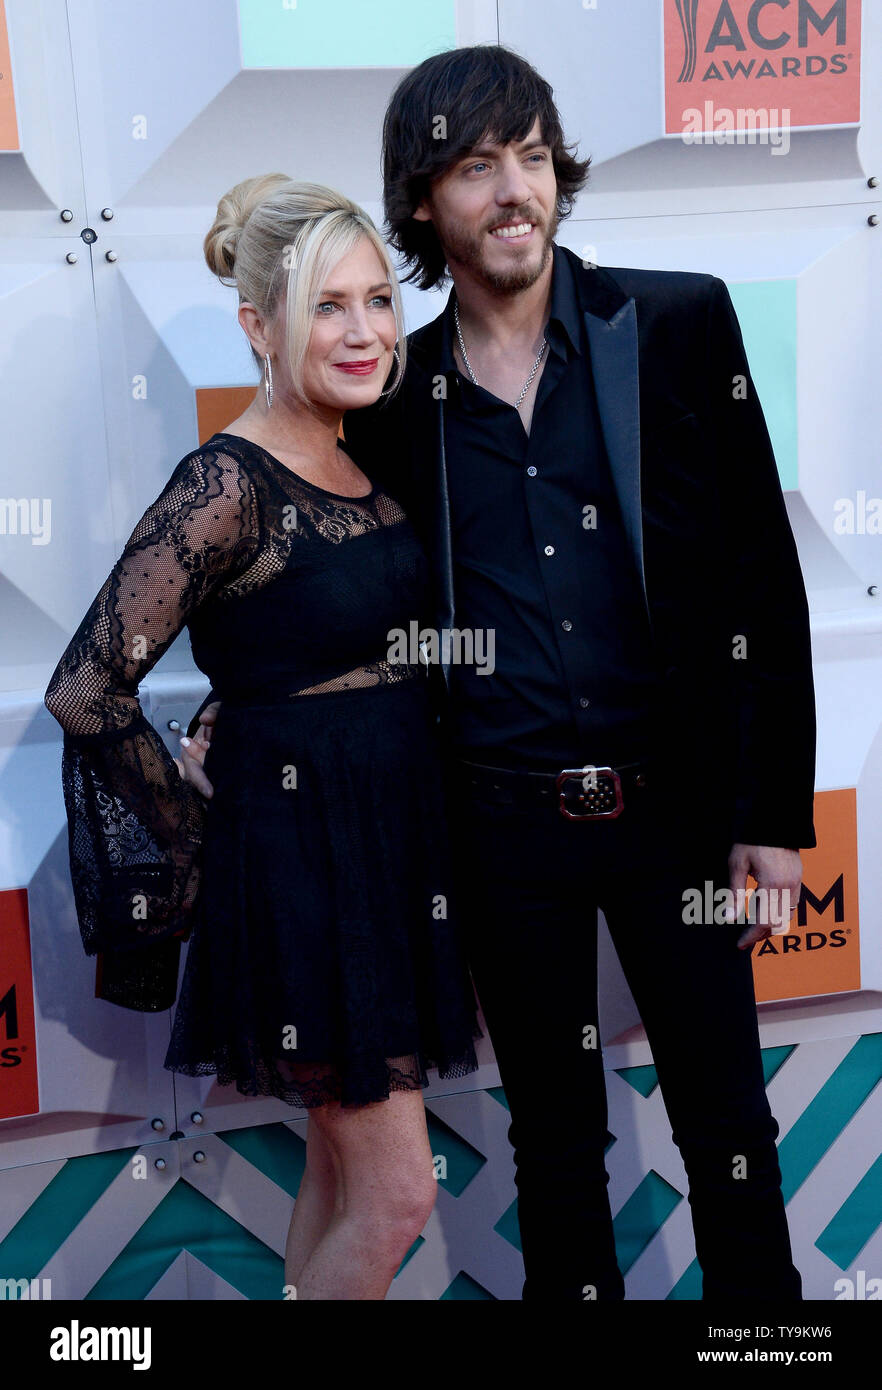 Singer Chris Janson (R) et Kelly Lynn assister à la 51e assemblée annuelle Academy of Country Music Awards qui a eu lieu au MGM Grand Arena de Las Vegas, Nevada le 3 avril 2016. Photo par Jim Ruymen/UPI Banque D'Images